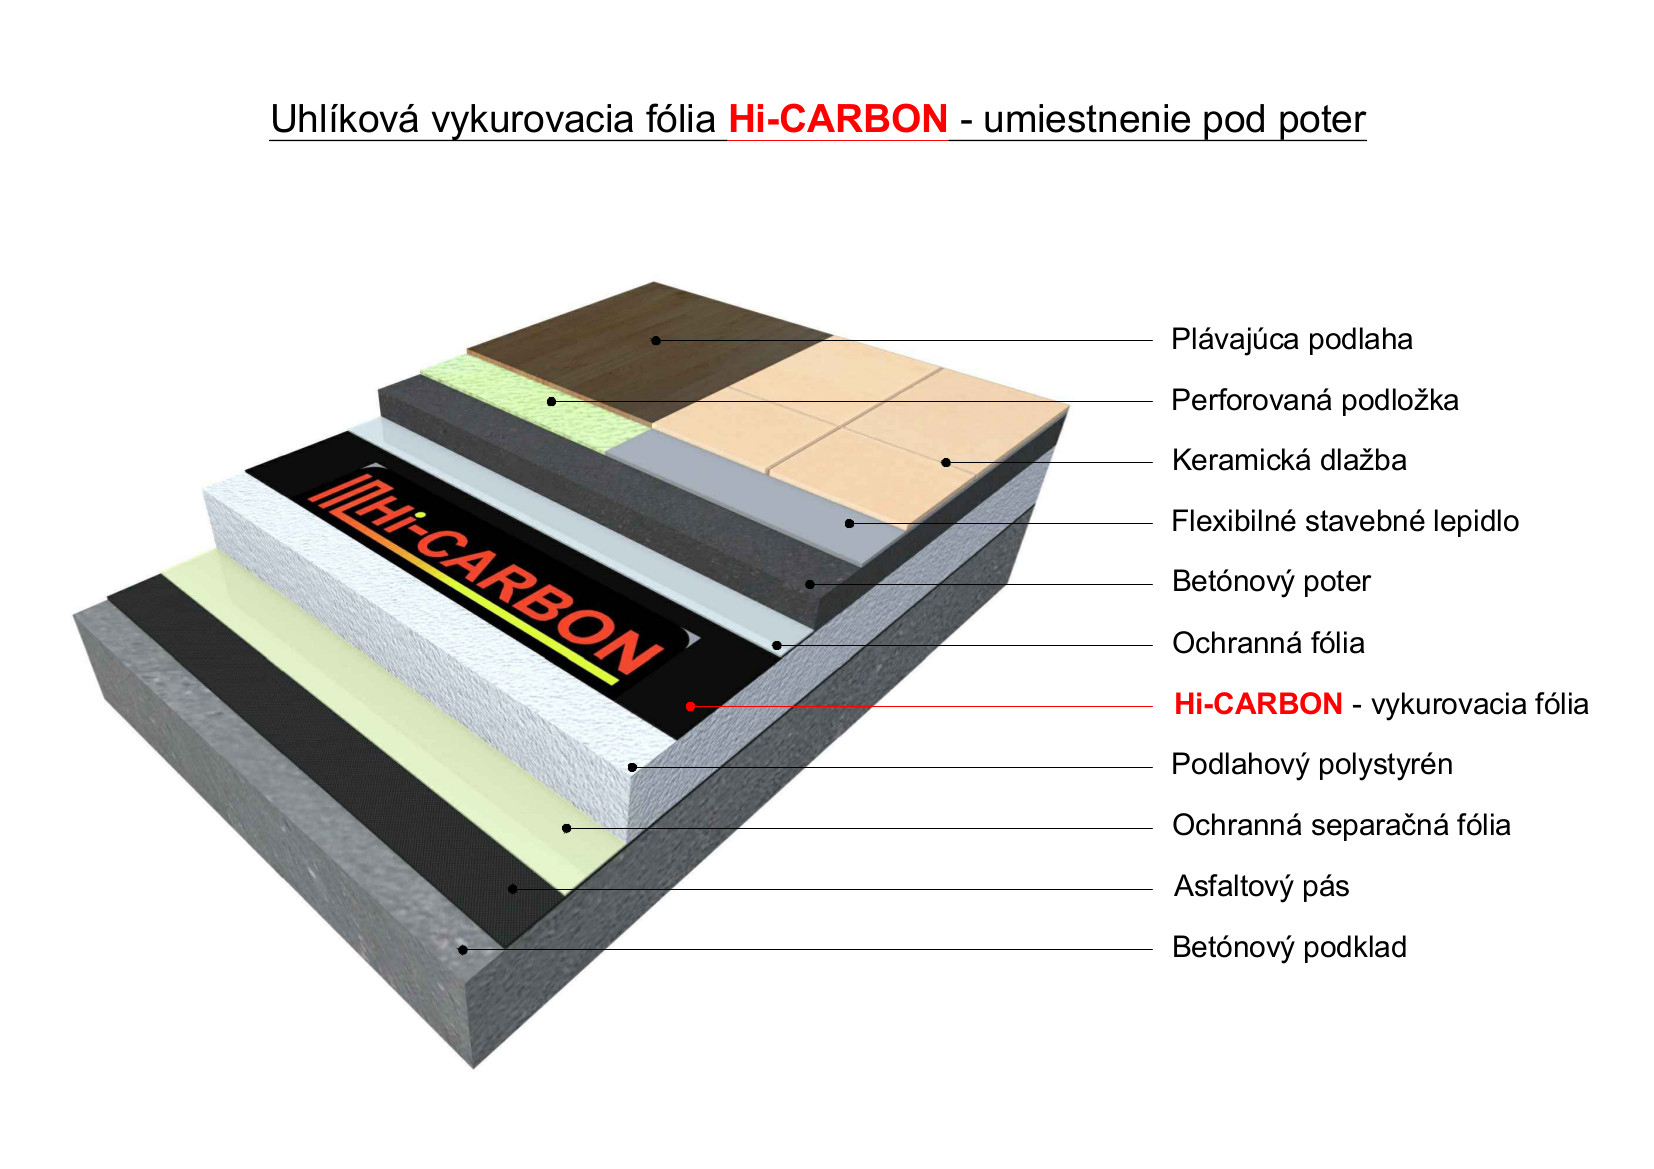 Elektrické podlahové kúrenie - vykurovacia fólia Hi-CARBON pod poter